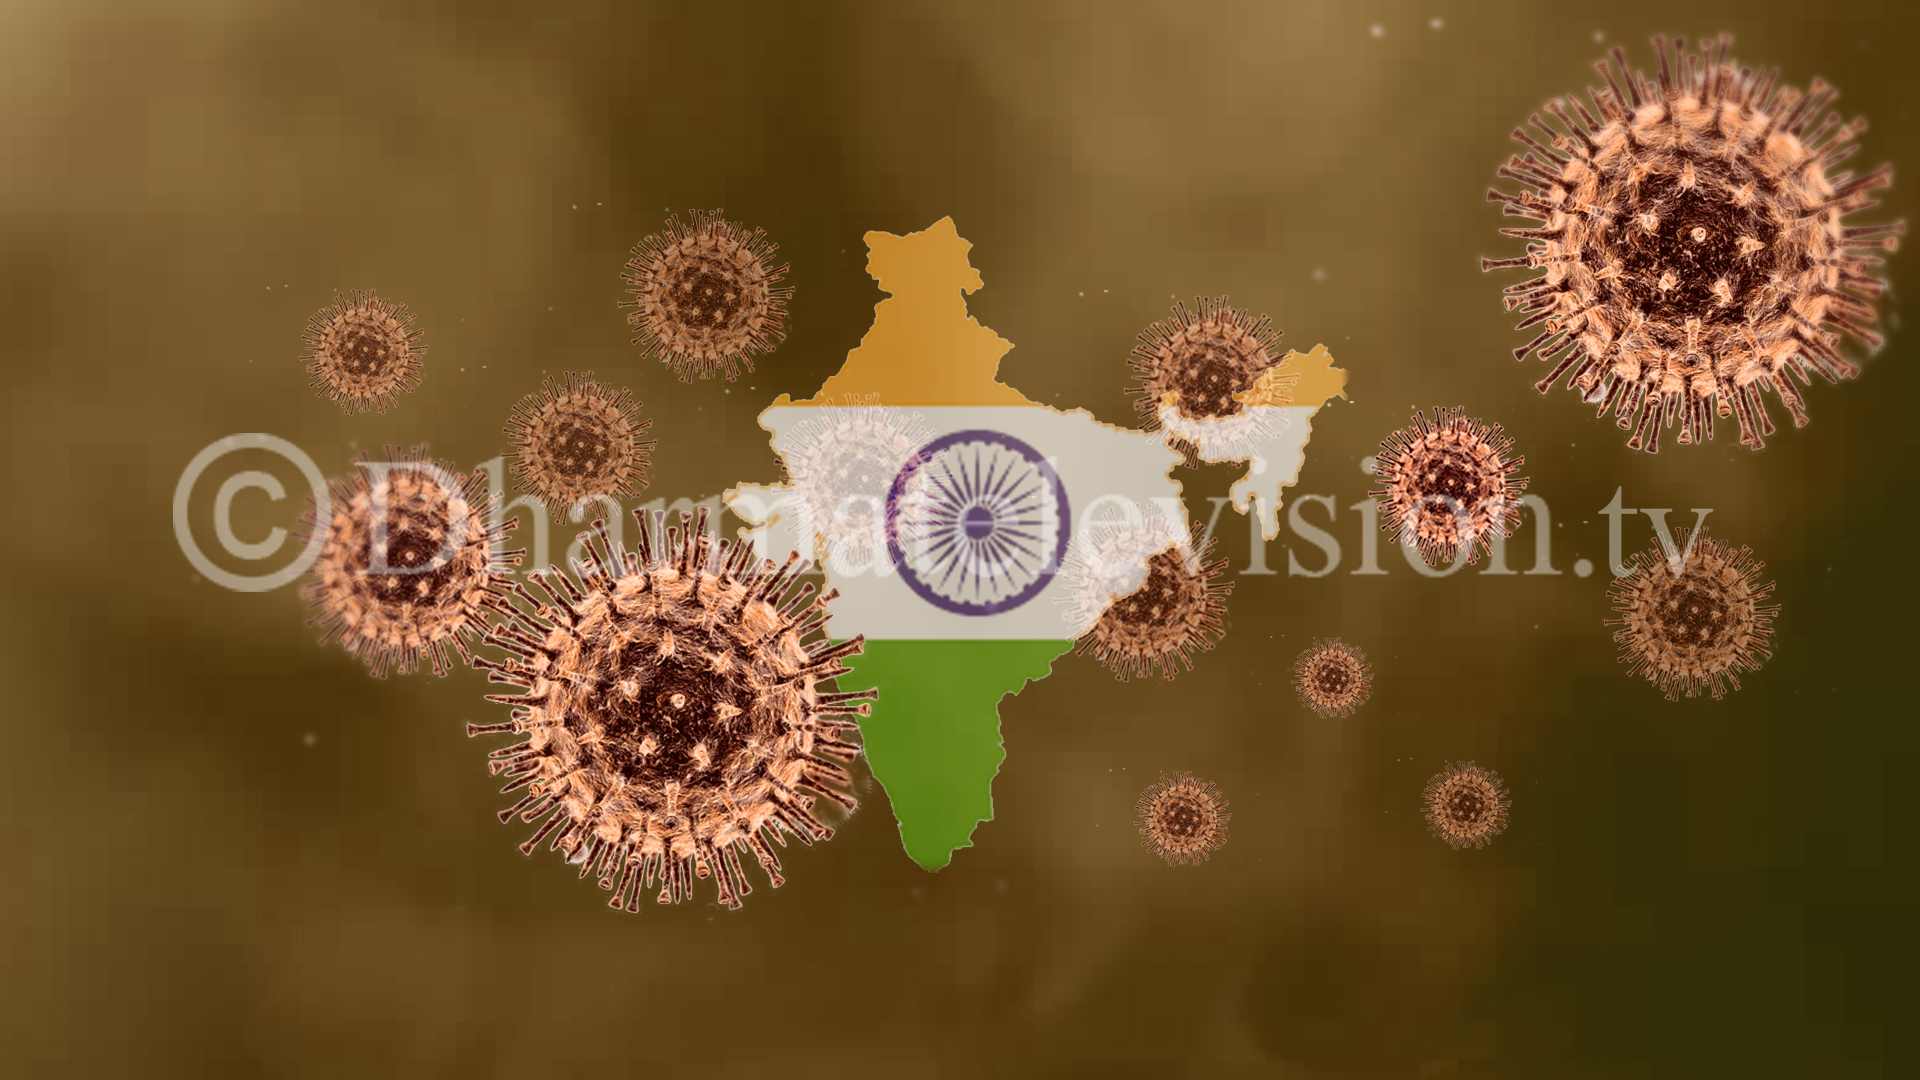 भारतमा १० लाख भन्दा बढीमा कोरोना संक्रमण